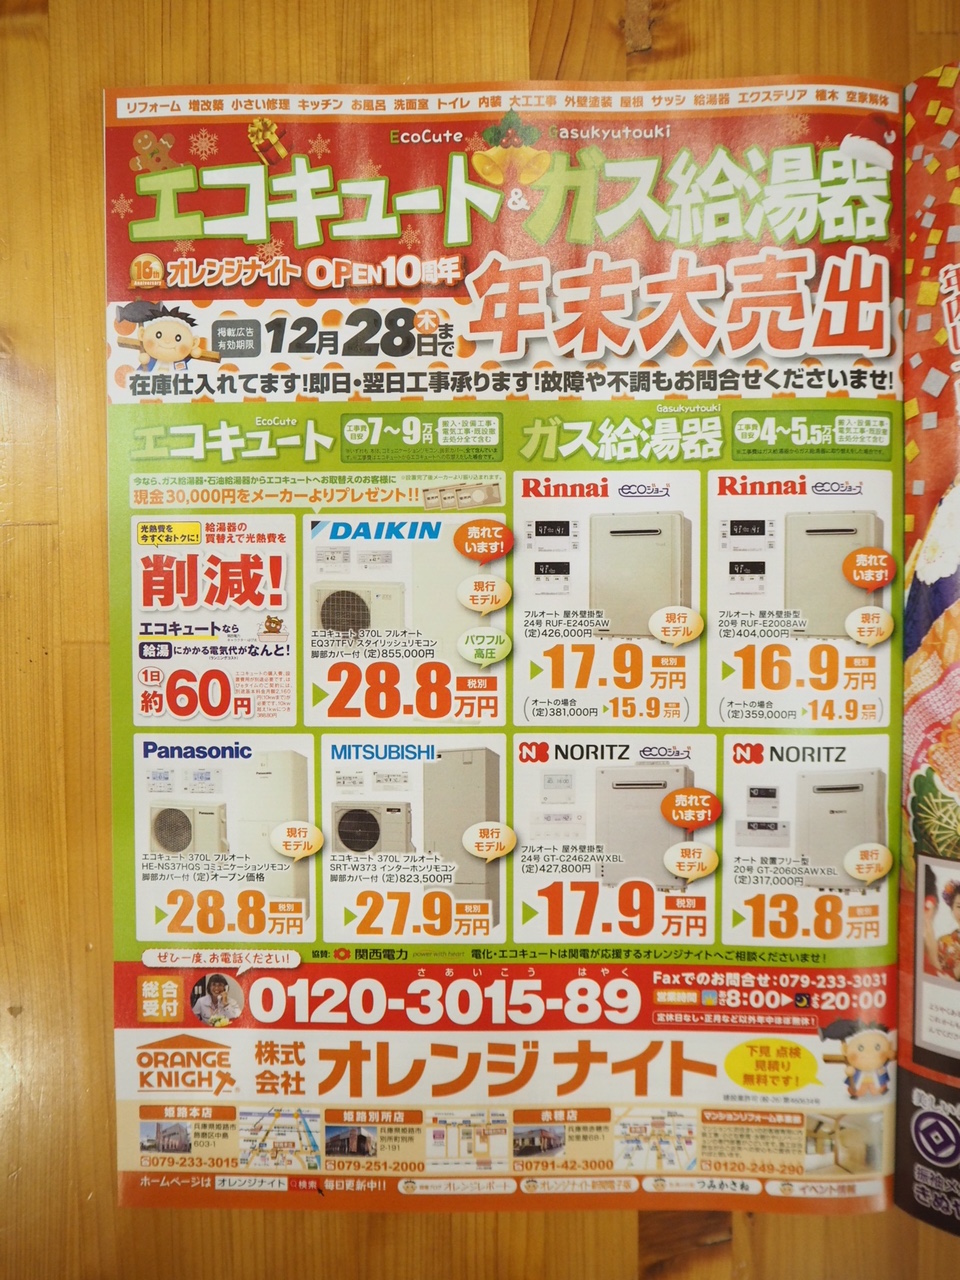 エコキュート&ガス給湯器　年末大売出し11月20日(月)スタート！ はりなび姫路 を見たとお問合せくださいませ！